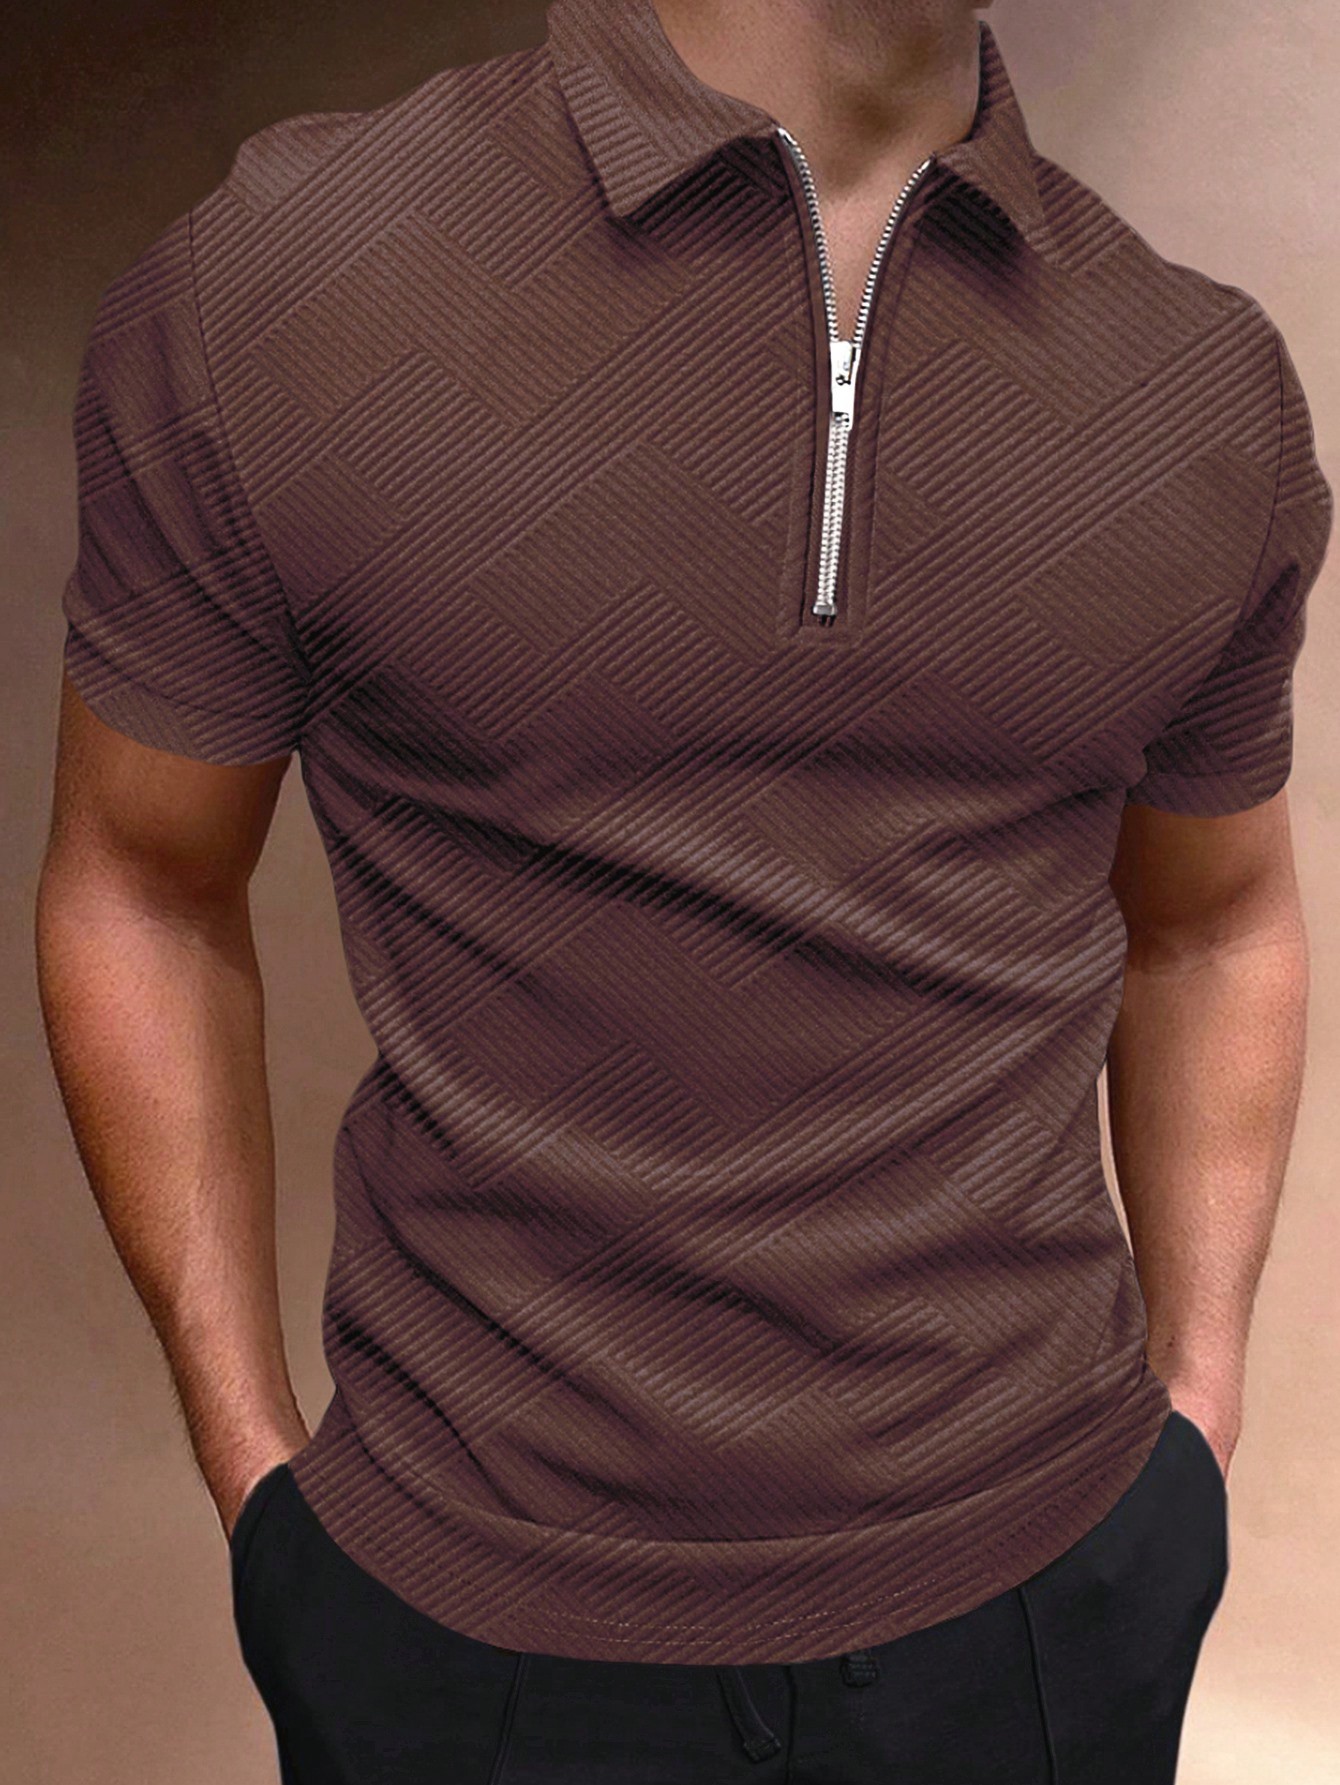 Мужская рубашка-поло с коротким рукавом Manfinity Homme с однотонной текстурой, кофейный коричневый